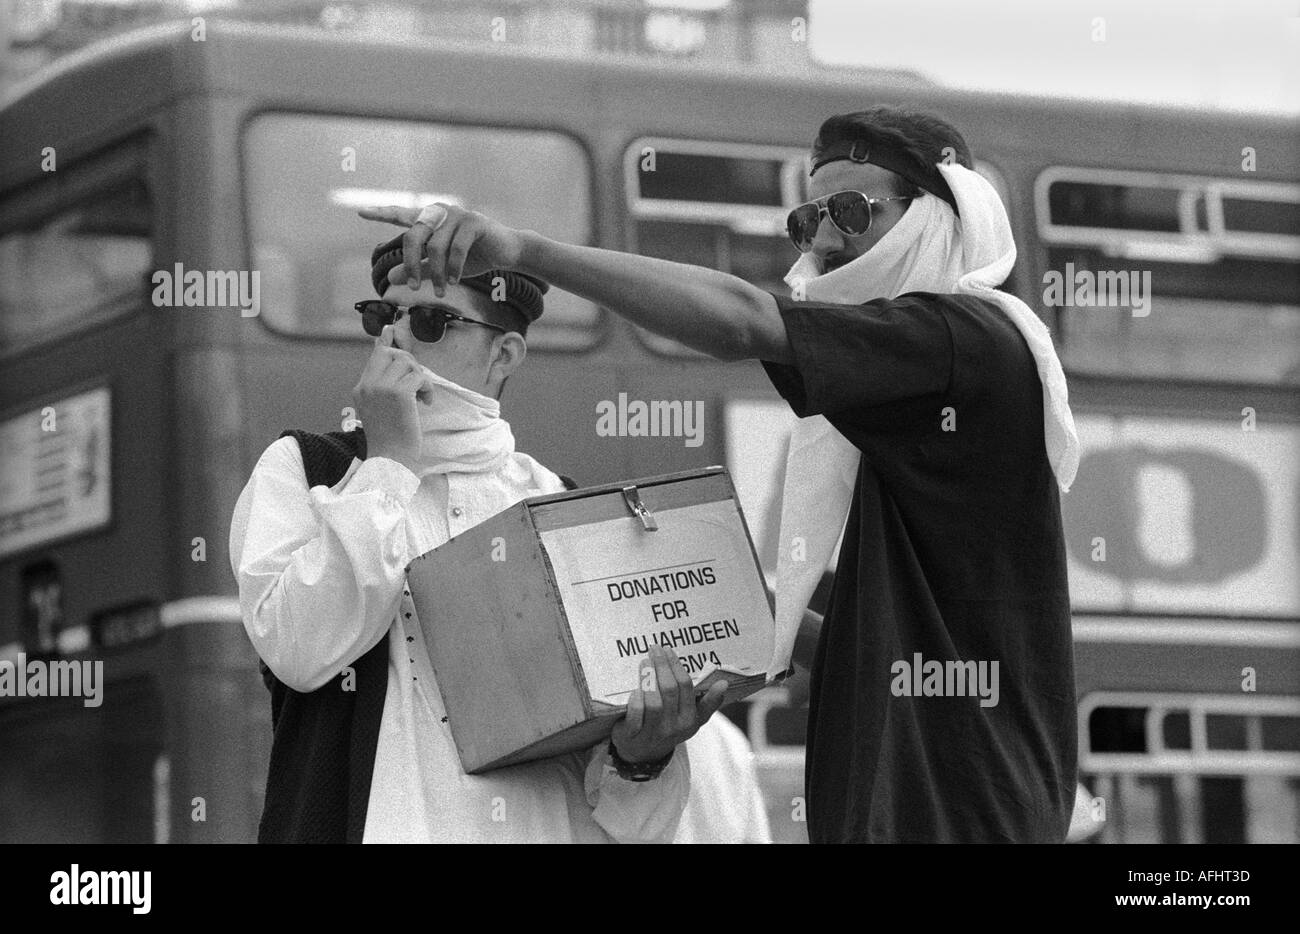 Zwei Männer sammeln Spenden für die Mudschaheddin in Bosnien bei einer Kundgebung für Islam Trafalgar Sq London August 93 Stockfoto